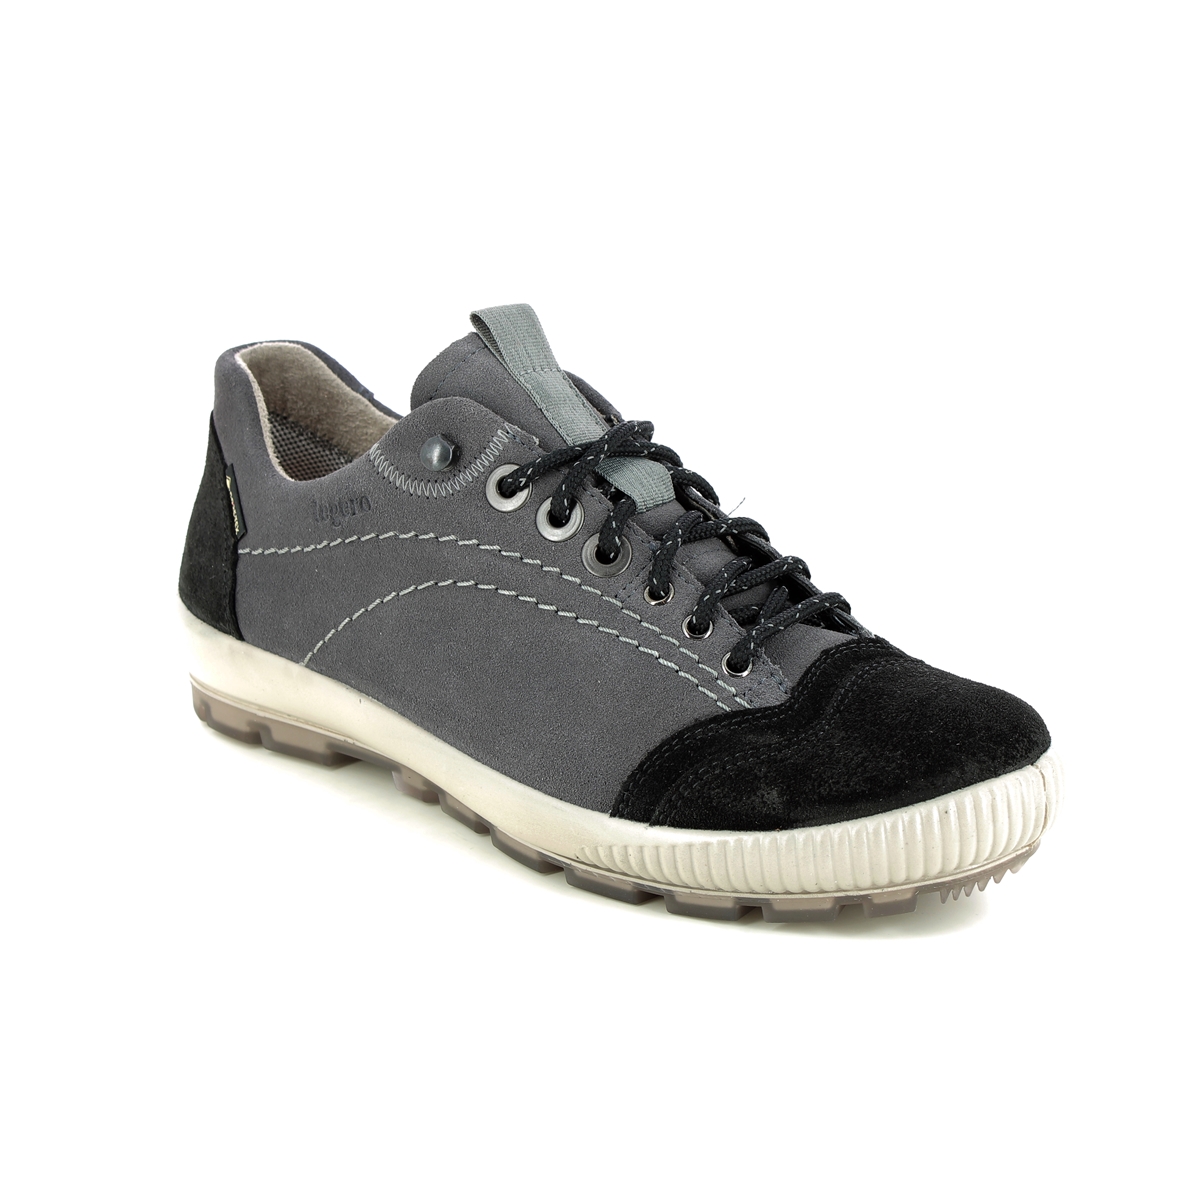 Legero Tanaro Trek Gtx Grey Womens Walking Shoes 2000122-2400 in a Plain Leather in Size 6.5